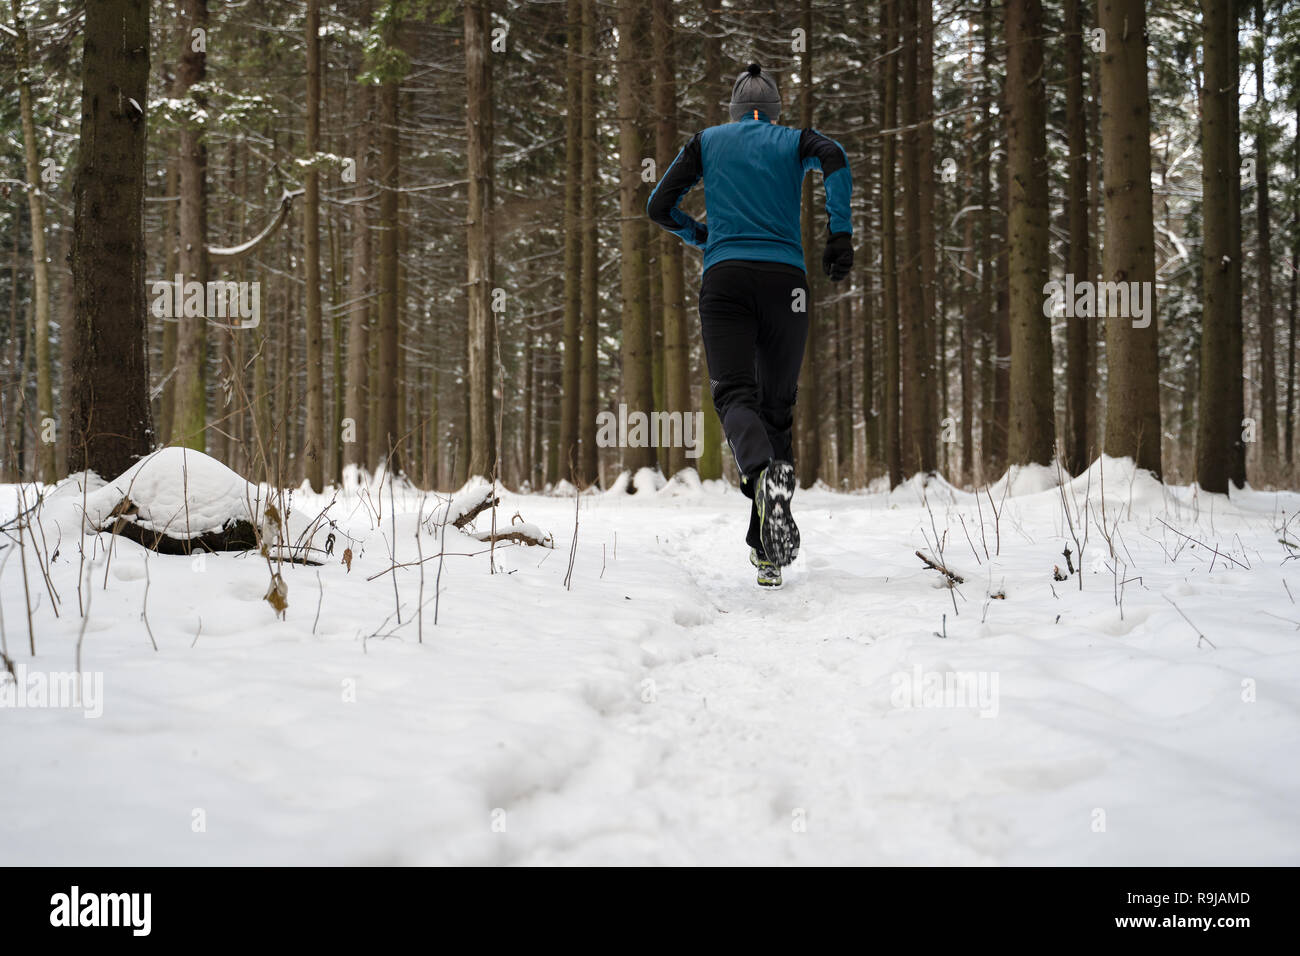 Desde el lado de la imagen del hombre en ropa deportiva, tapa roja en  correr en invierno Fotografía de stock - Alamy